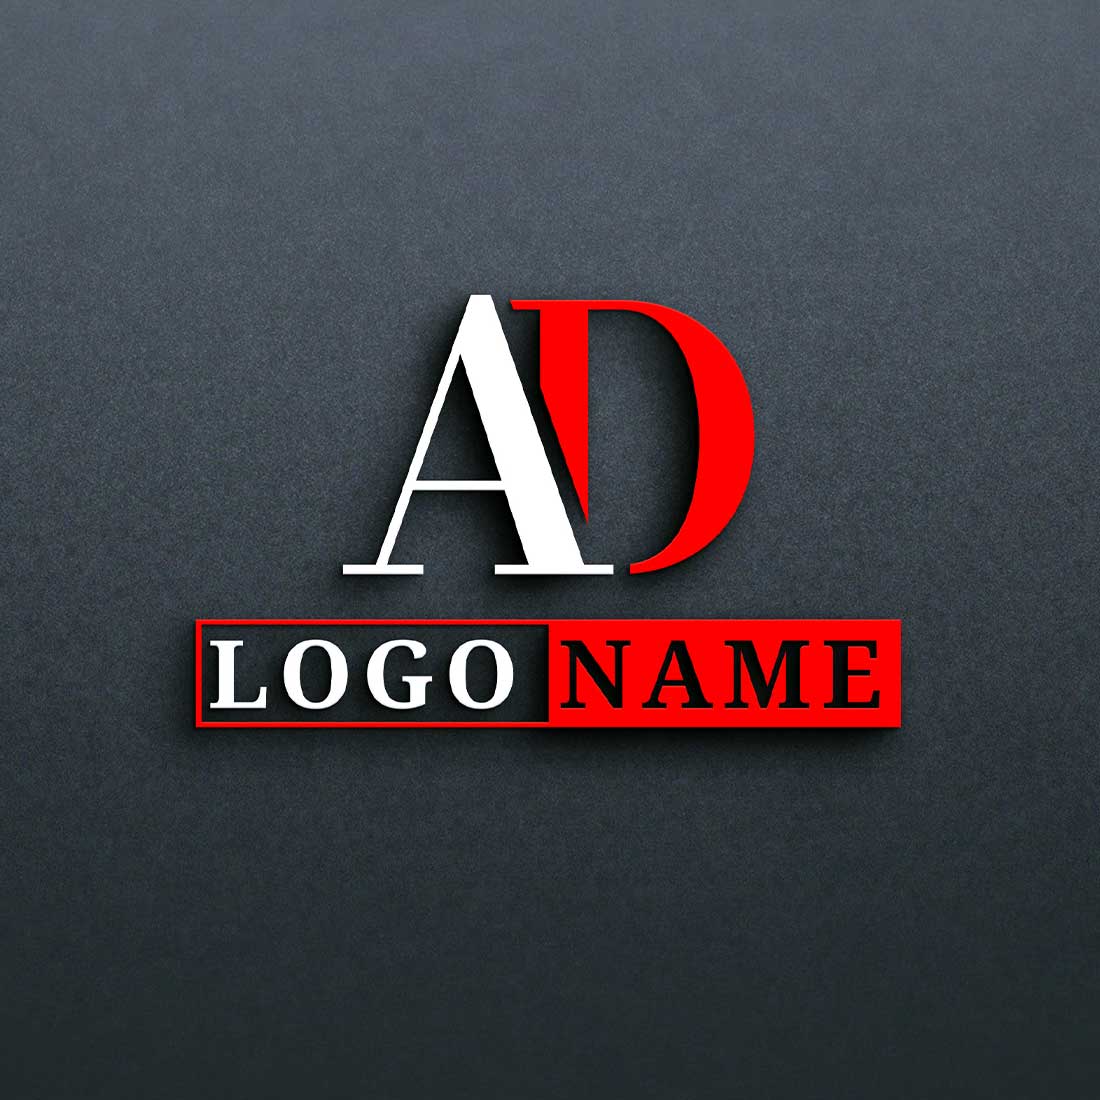 ad logo design002 327